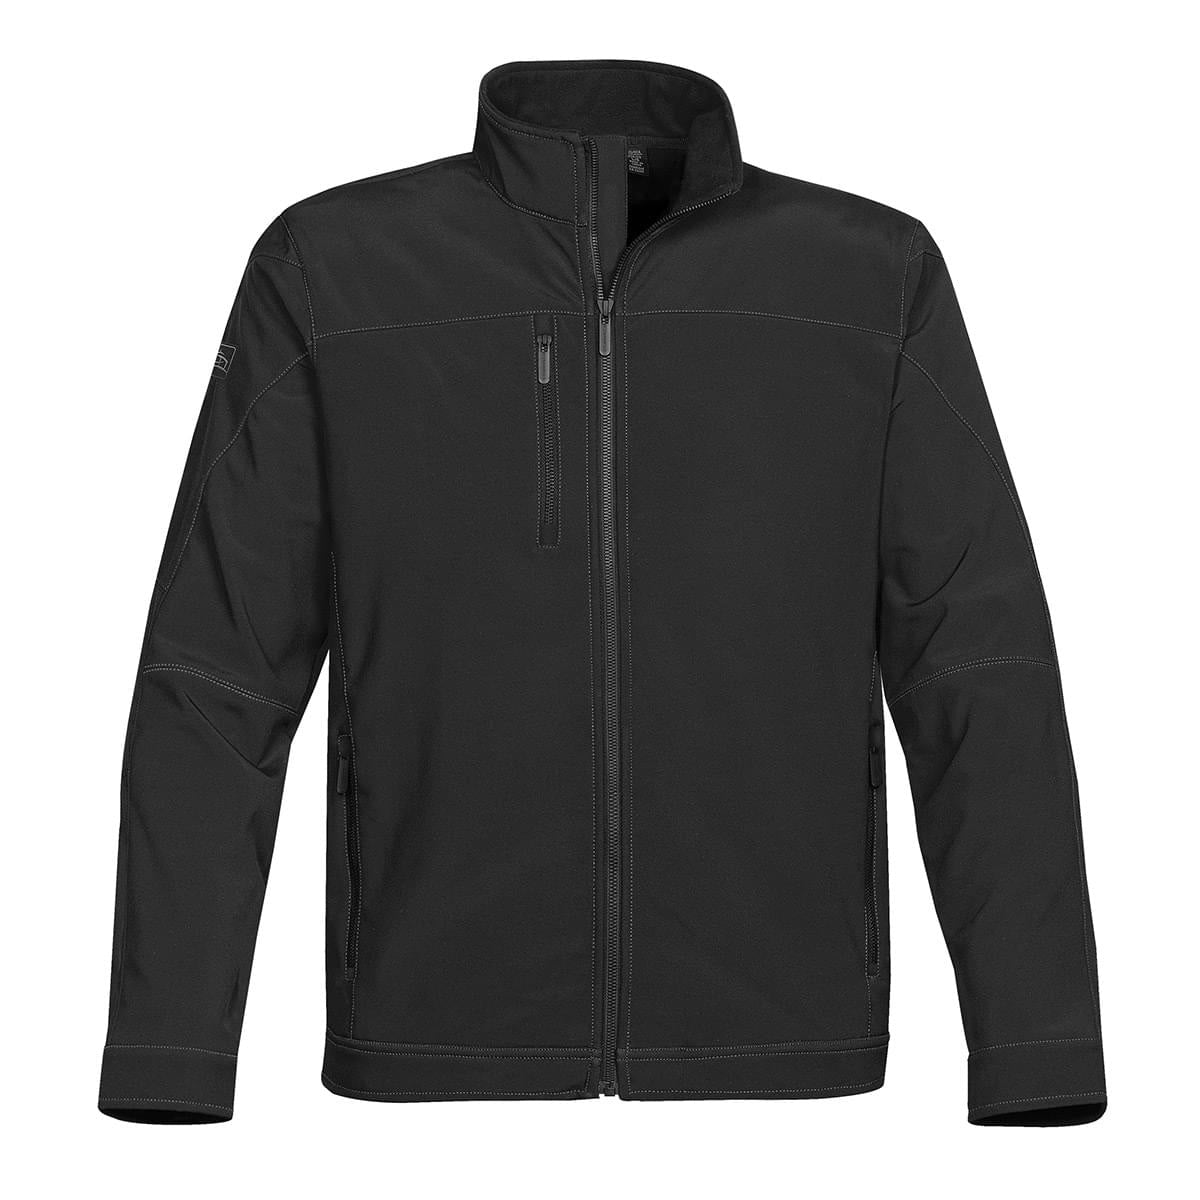 Men's Soft Tech Jacket - Stormtech USA Retail